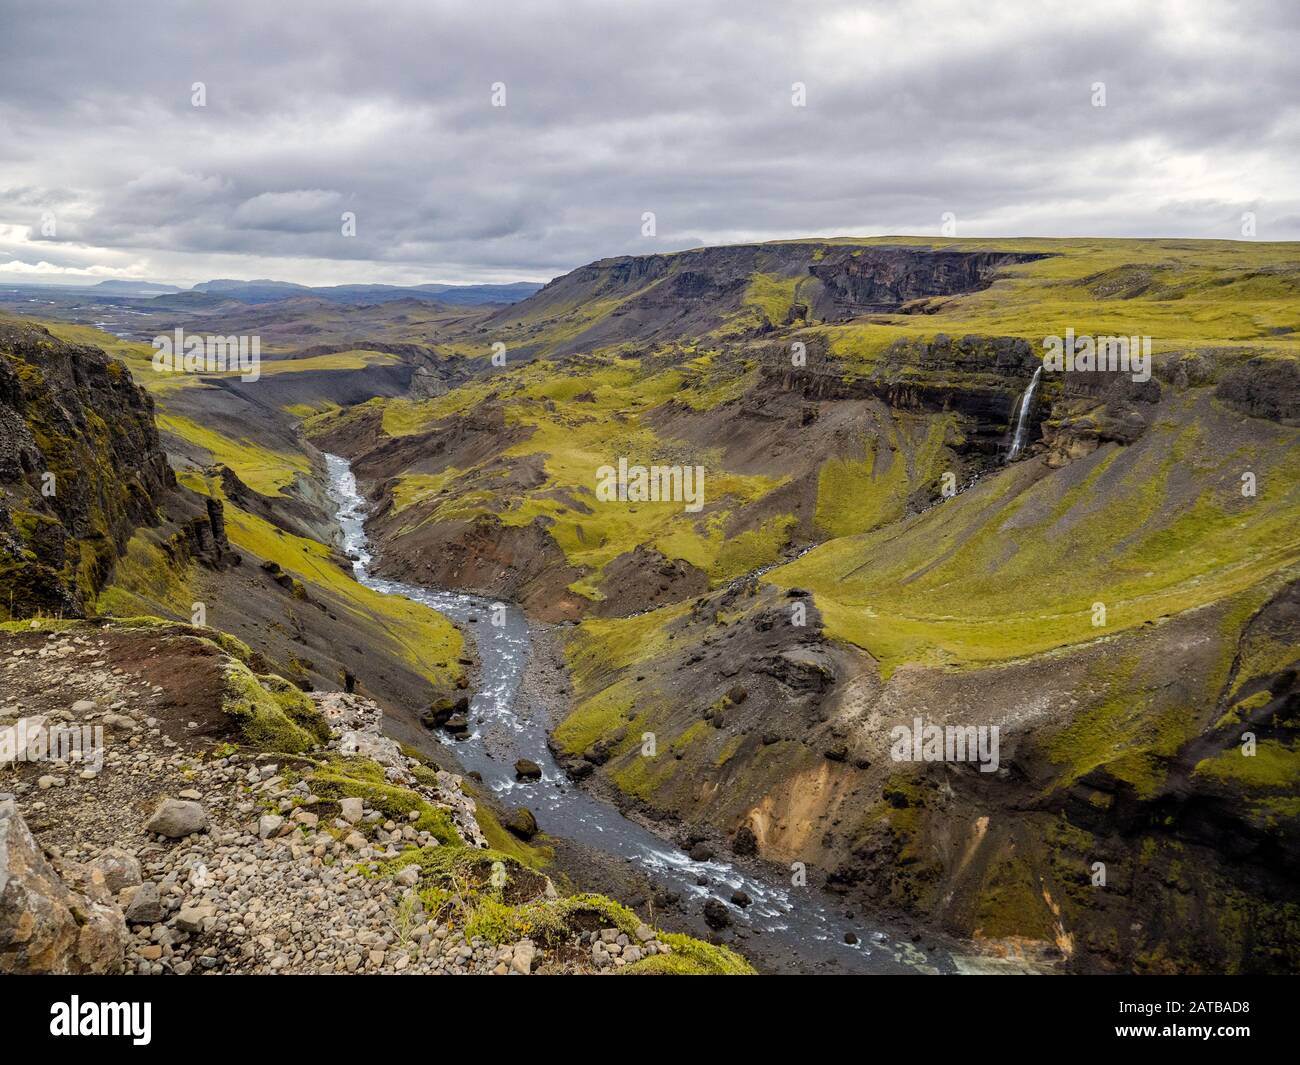 Der Háifoss Wasserfall im Herzen von Island.An einem bewölkten Tag sucht sich das Wasser als Naturgewalt unbeirrt seinen Weg durch die schroffe Insel. Foto de stock